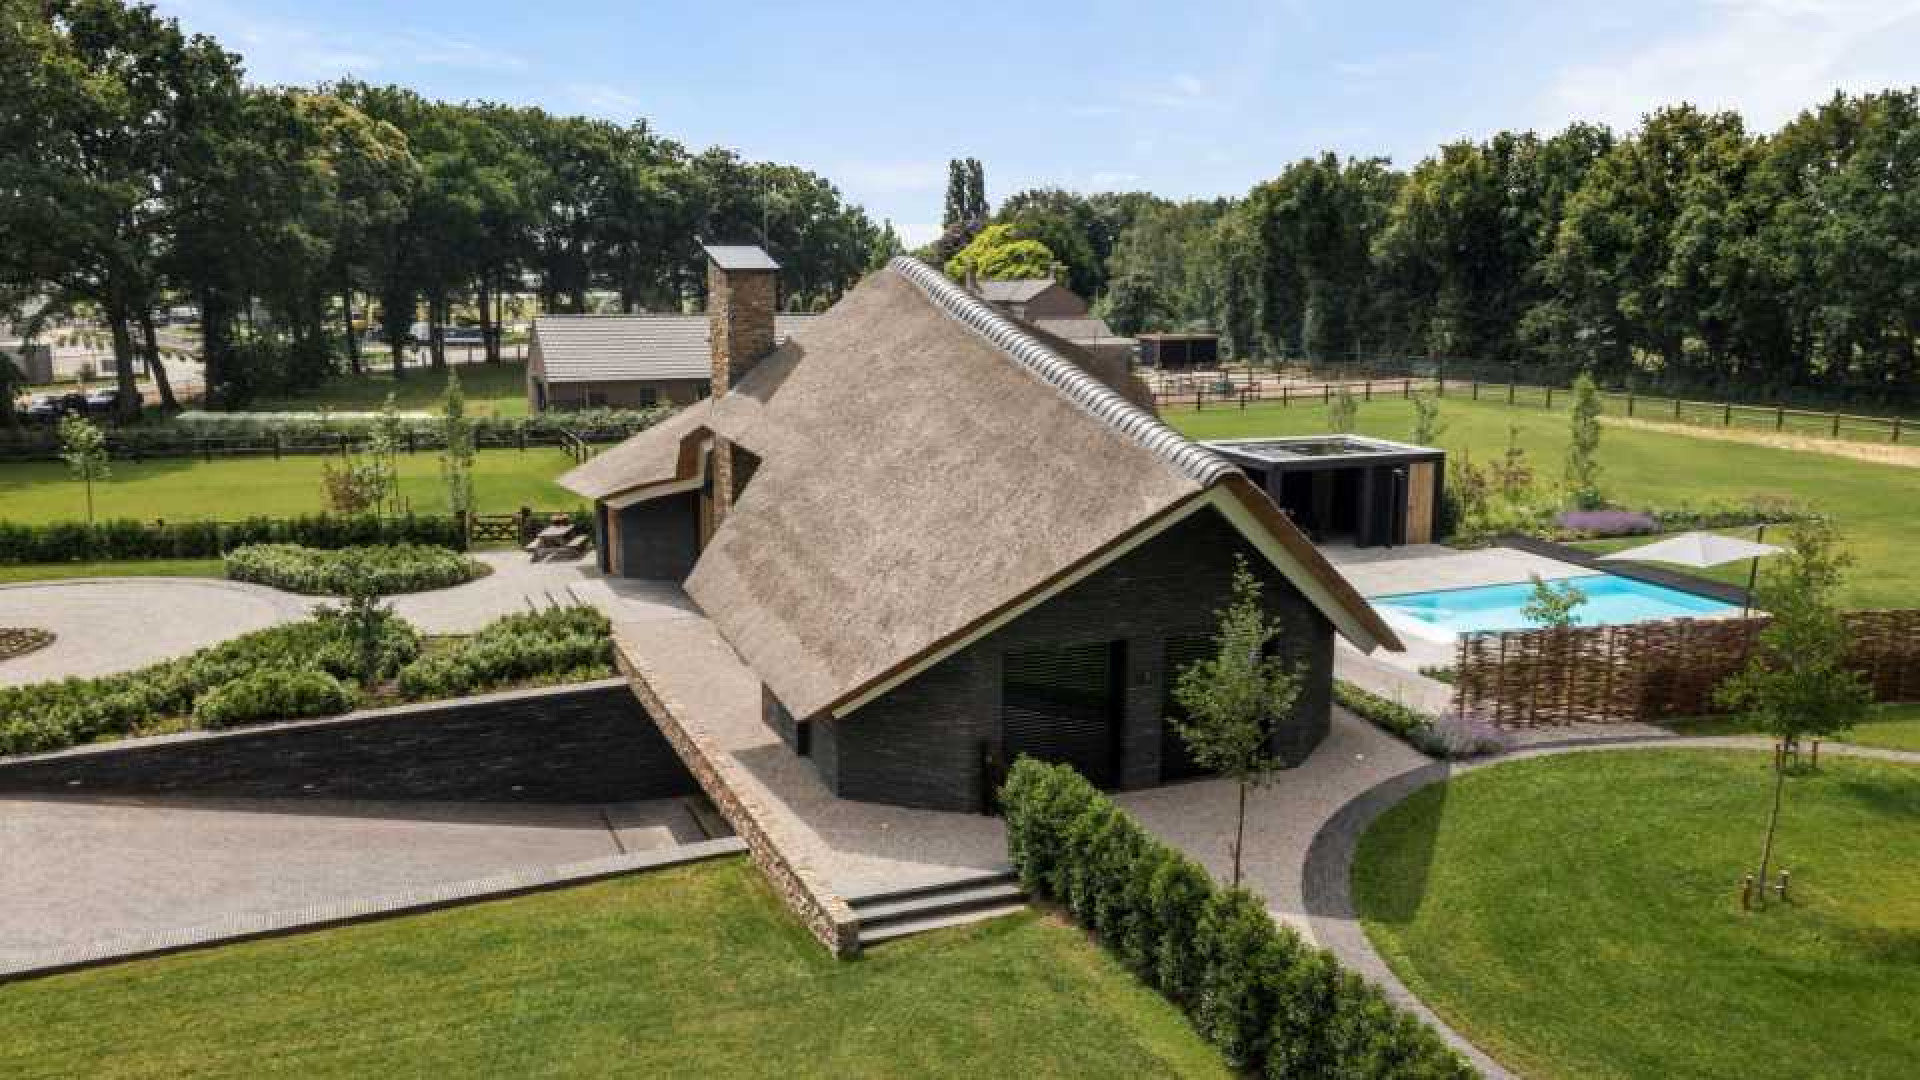 DJ Nicky Romero koopt deze miljoenenvilla met zwembad en inpandige lift. Zie foto's plus video.